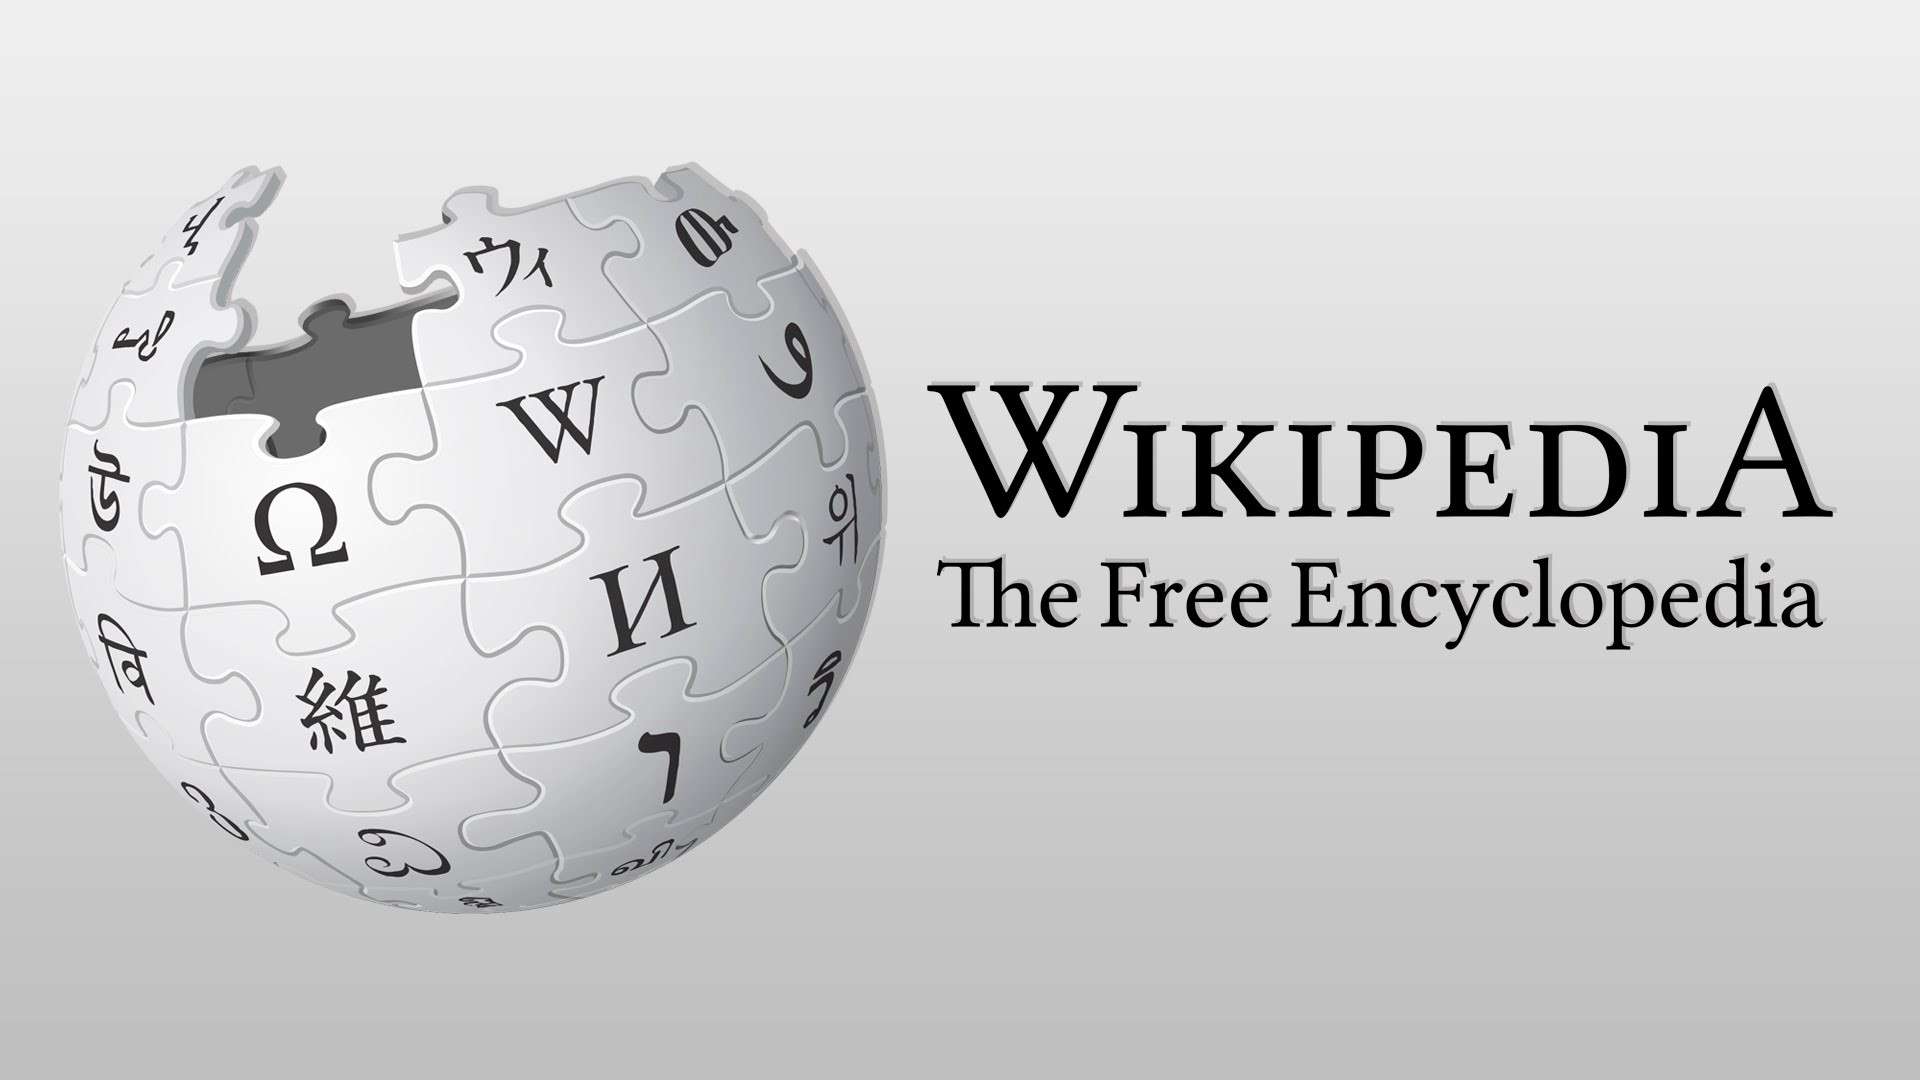 Η Wikipedia γιορτάζει 20 χρόνια παρουσίας